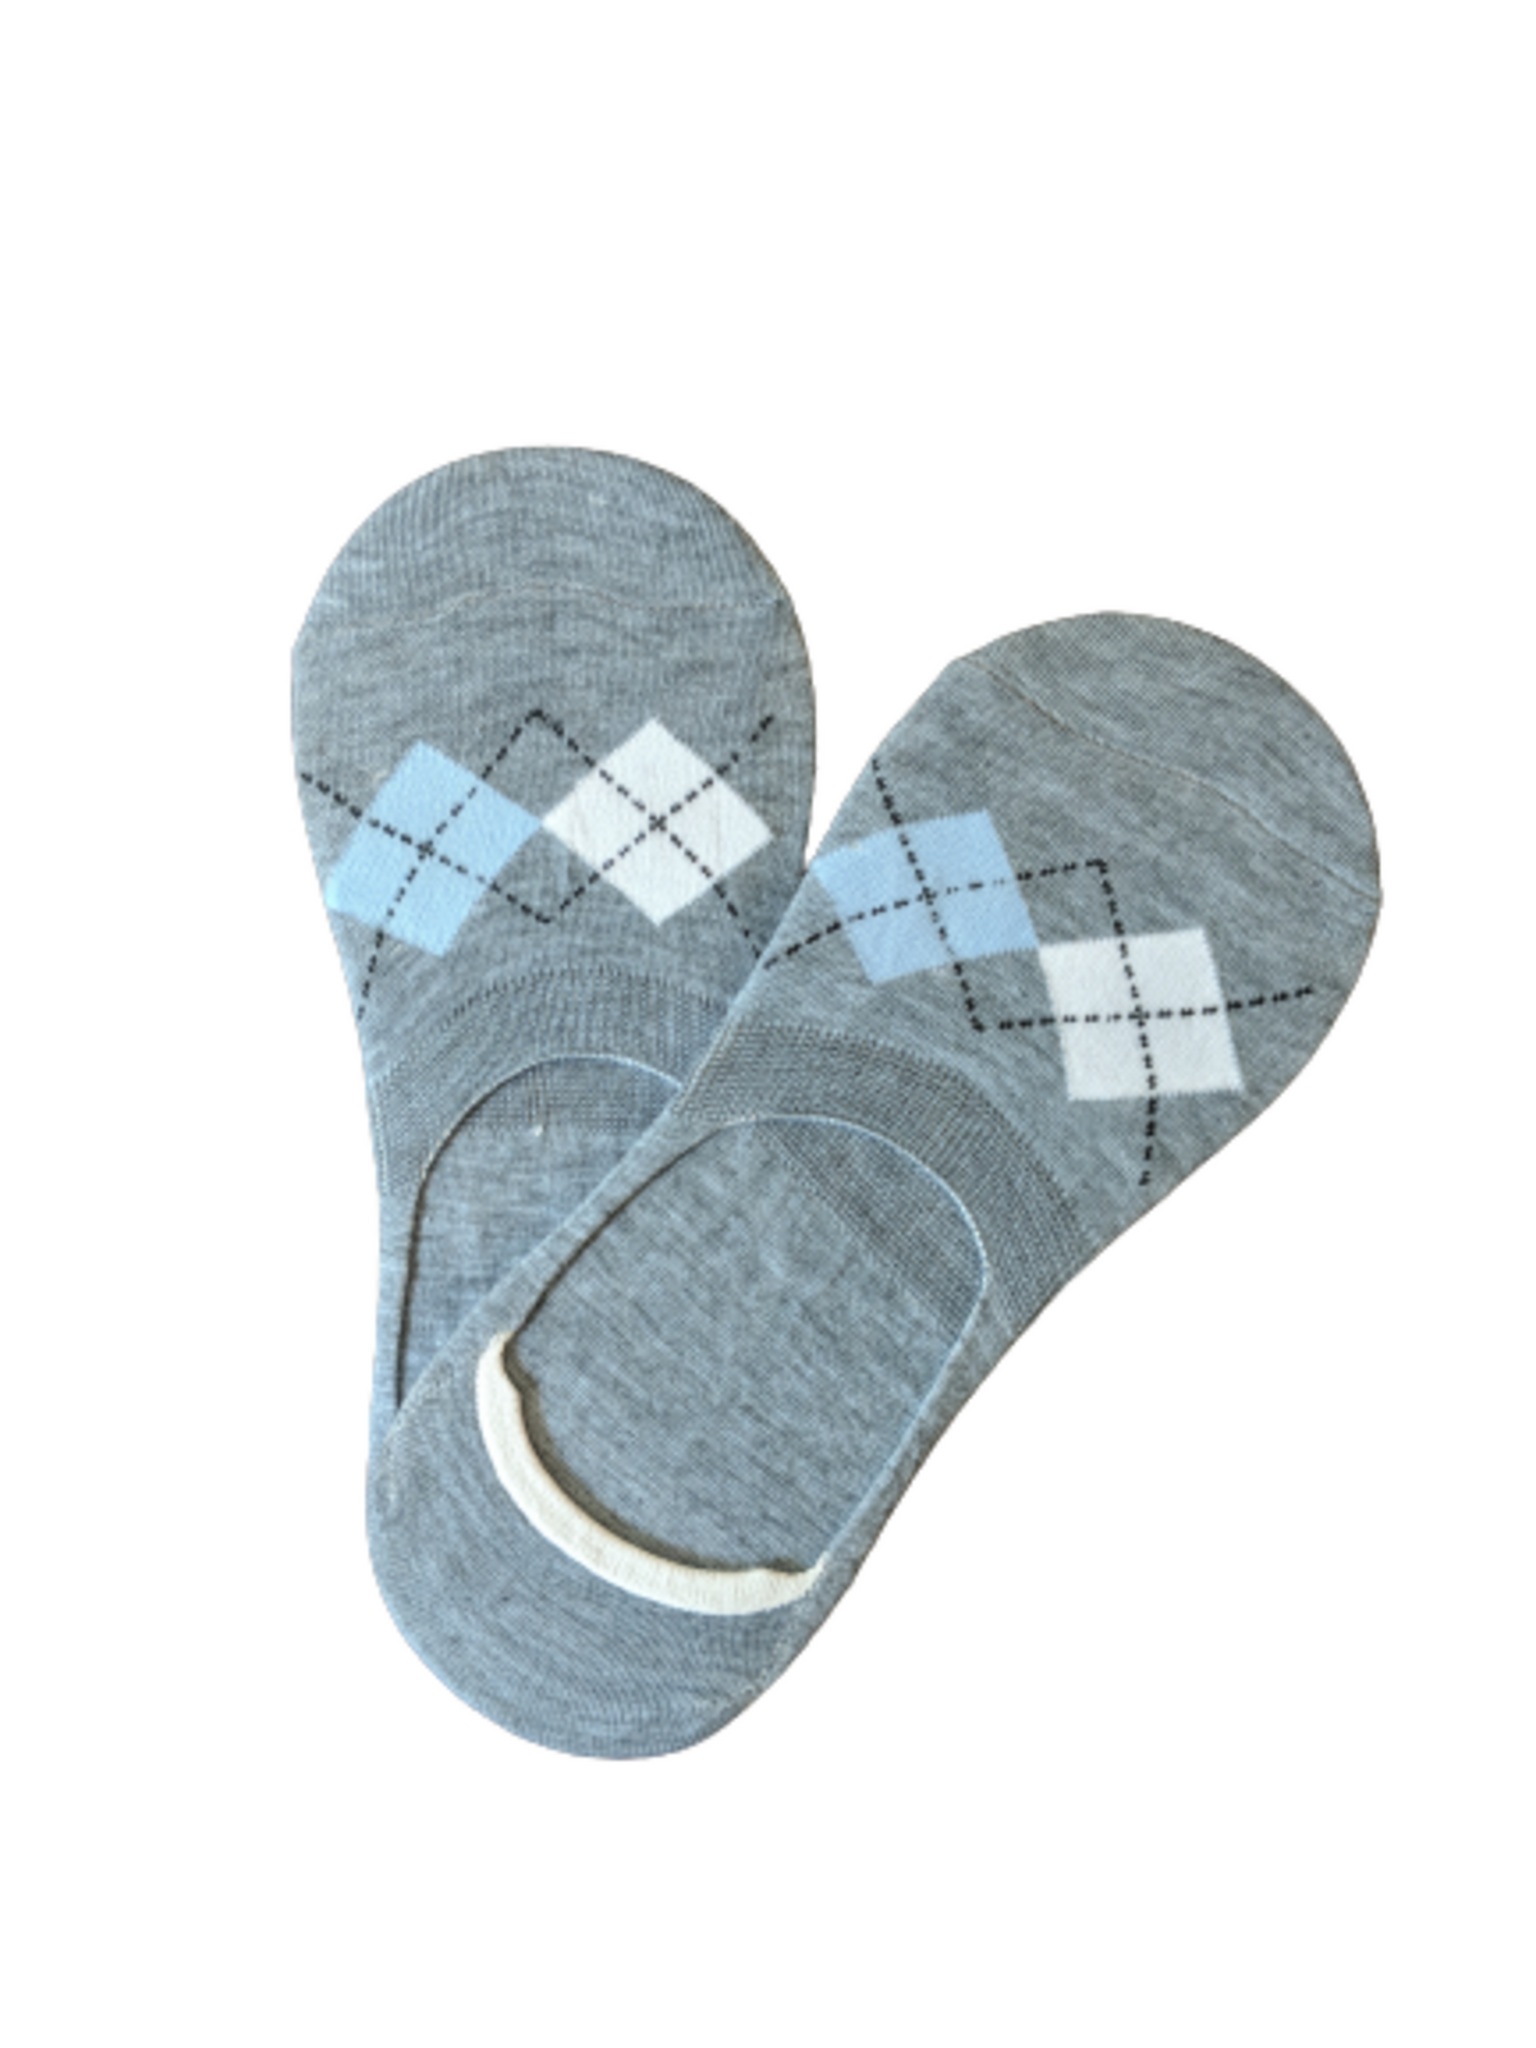 Formal Grey Loafer Socks